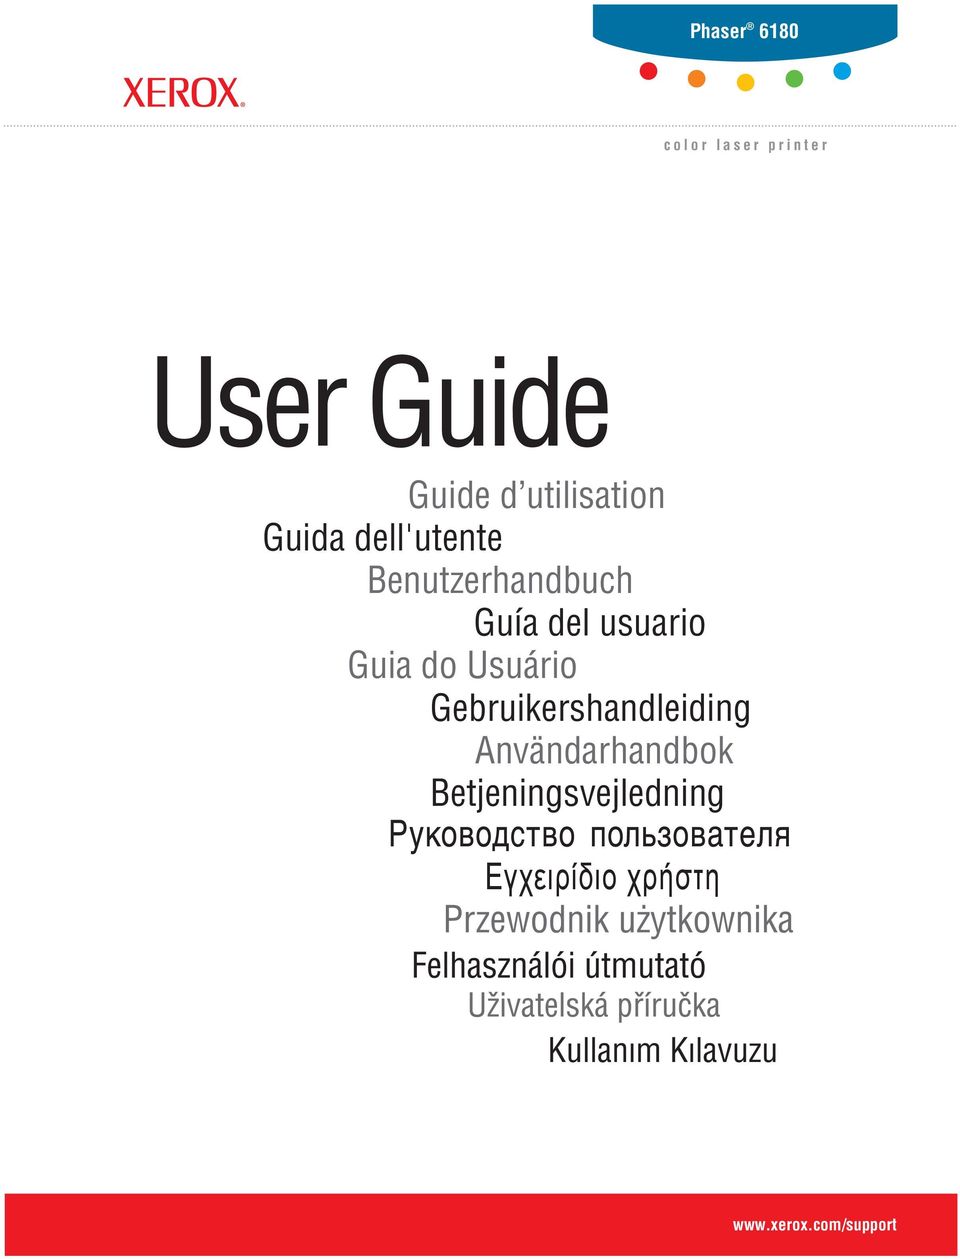 usuario Guia do Usuário Gebruikershandleiding